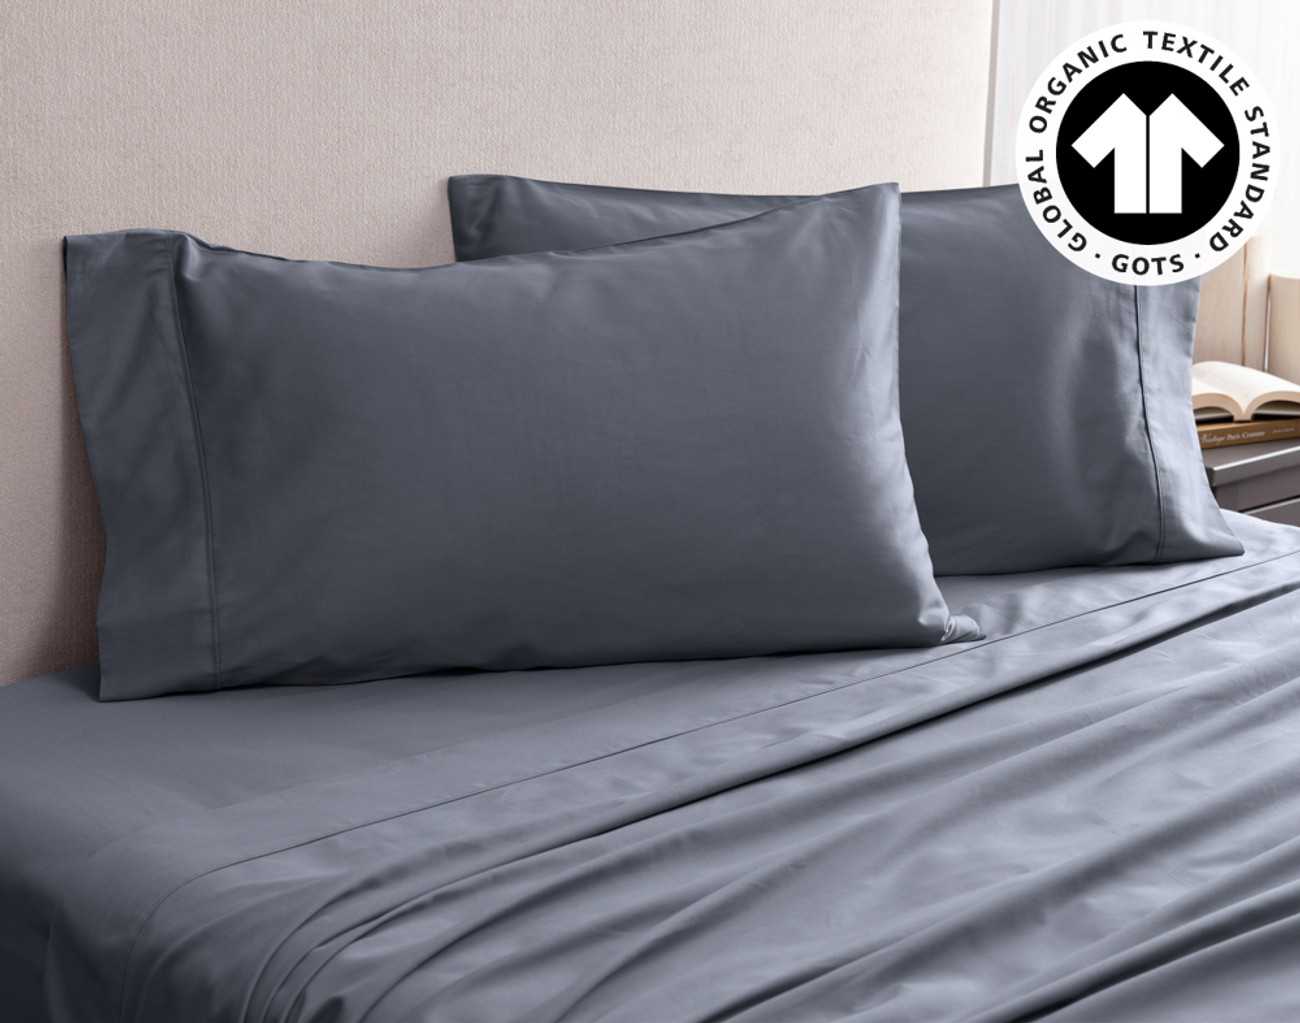 Charcoal Grey Linen Flat Sheet - Smooth Linen Sheets - 100% Pure Linen -  Dark Grey Bedding